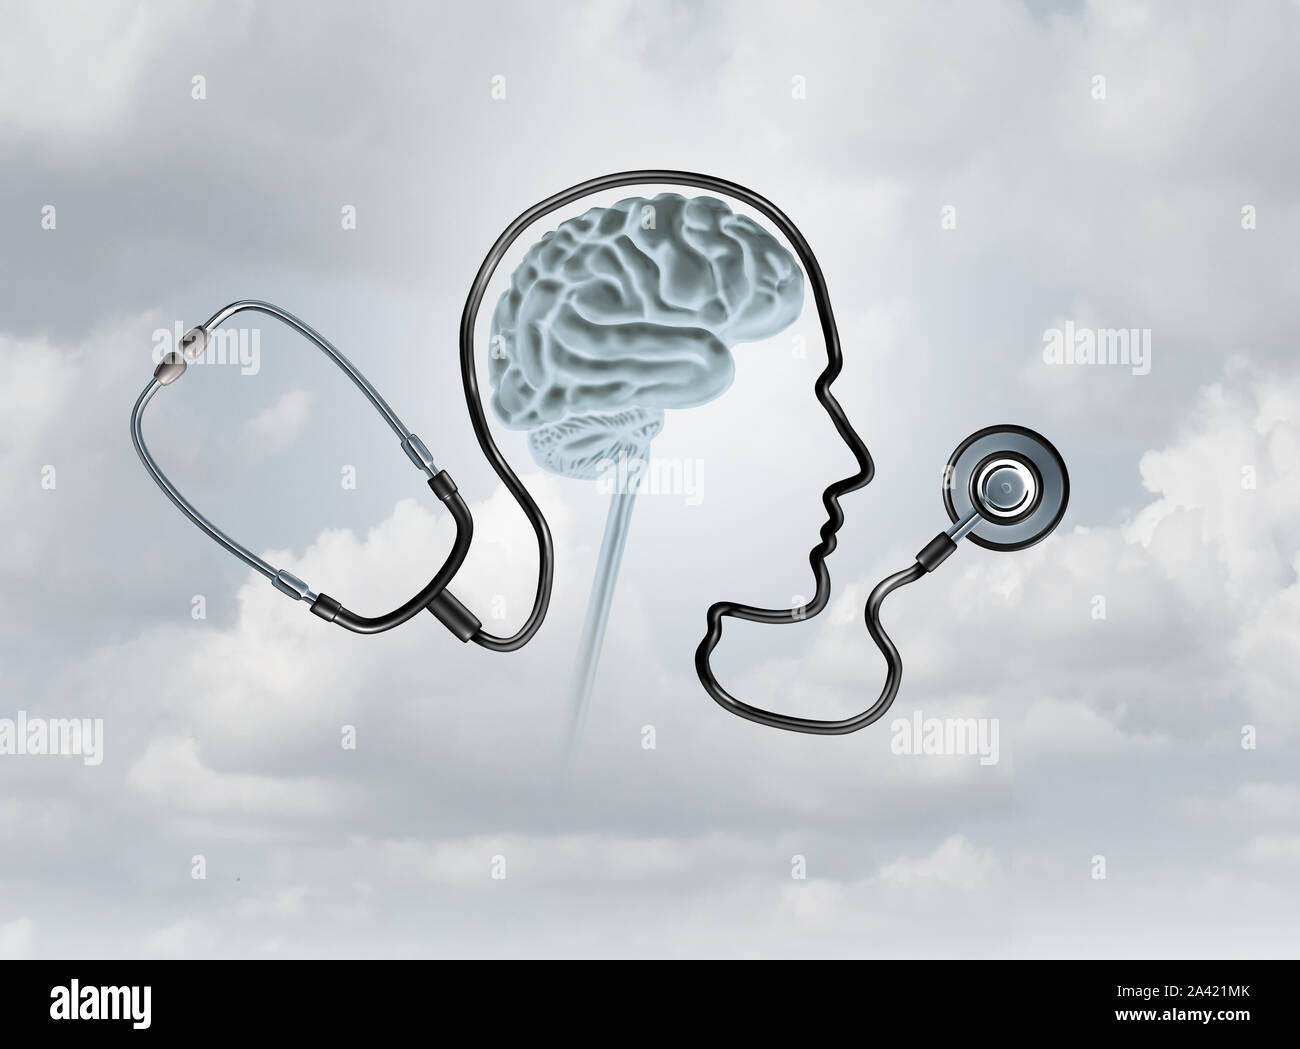 Psychische Gesundheit und psychische Erkrankung, Bewusstsein als healthcare oder health care Konzept mit 3D-Illustration Elemente. Stockfoto